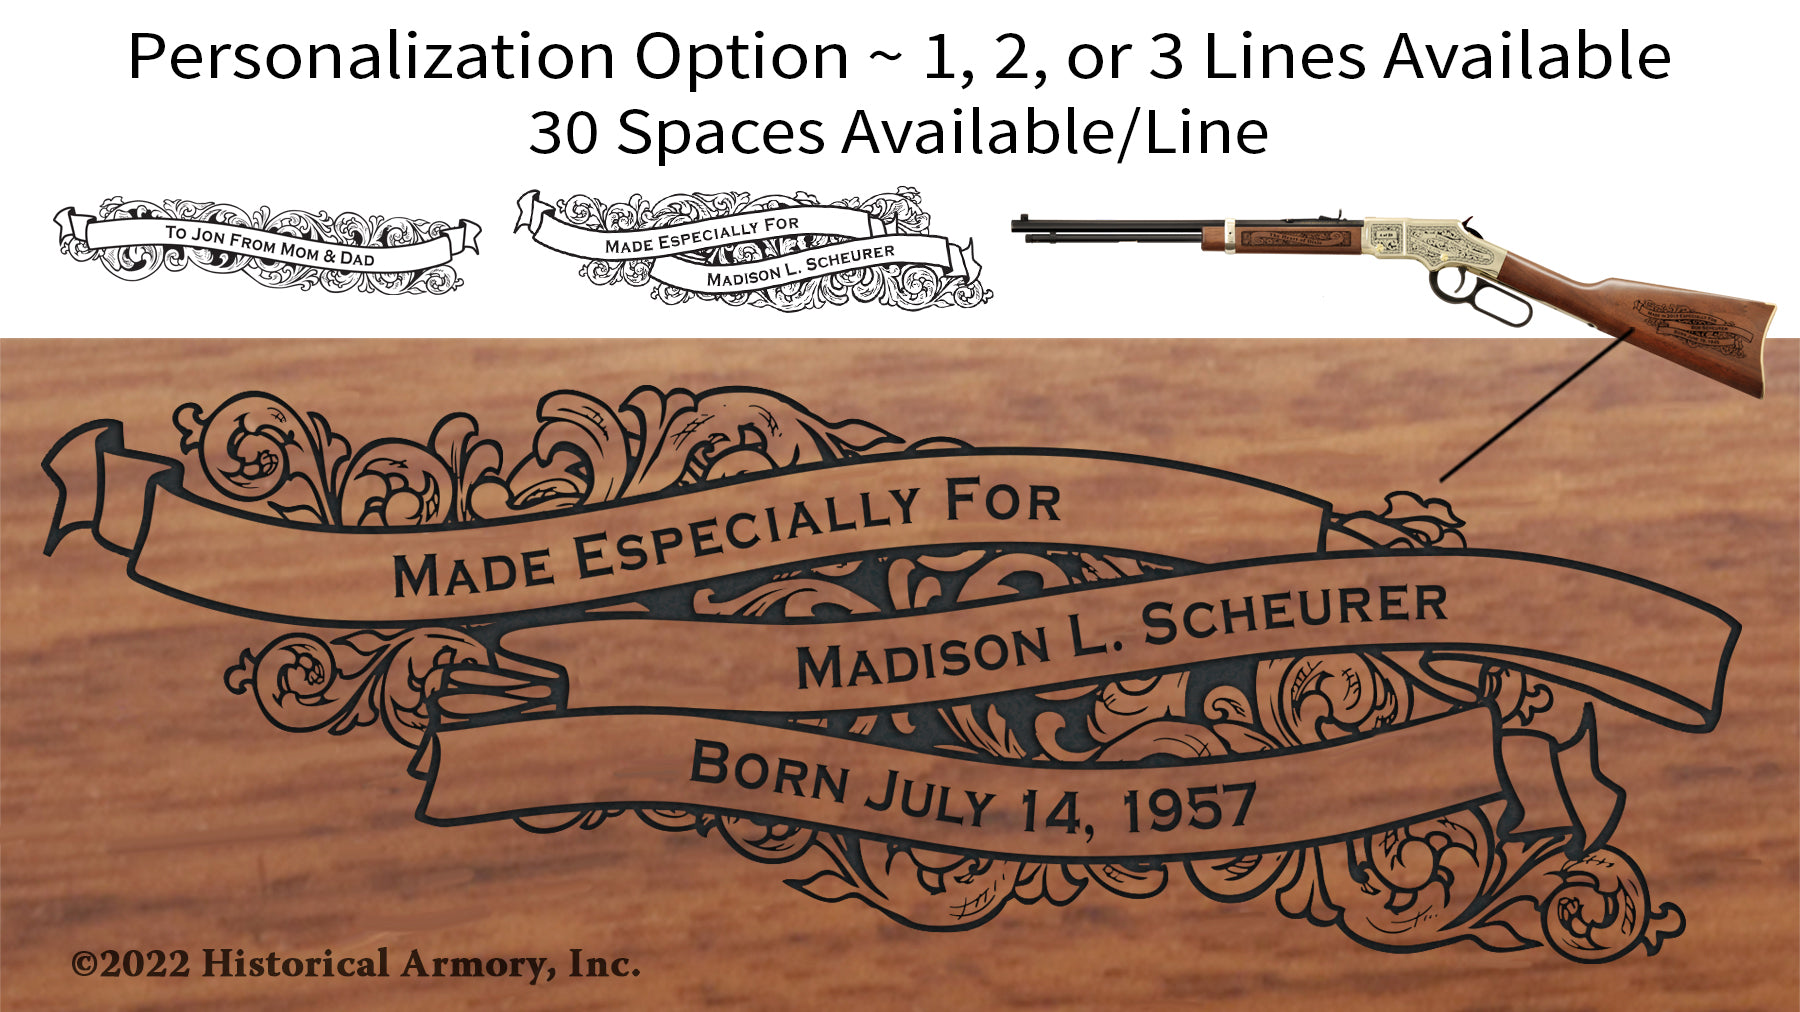 Yellowstone County Montana Engraved Rifle Personalization